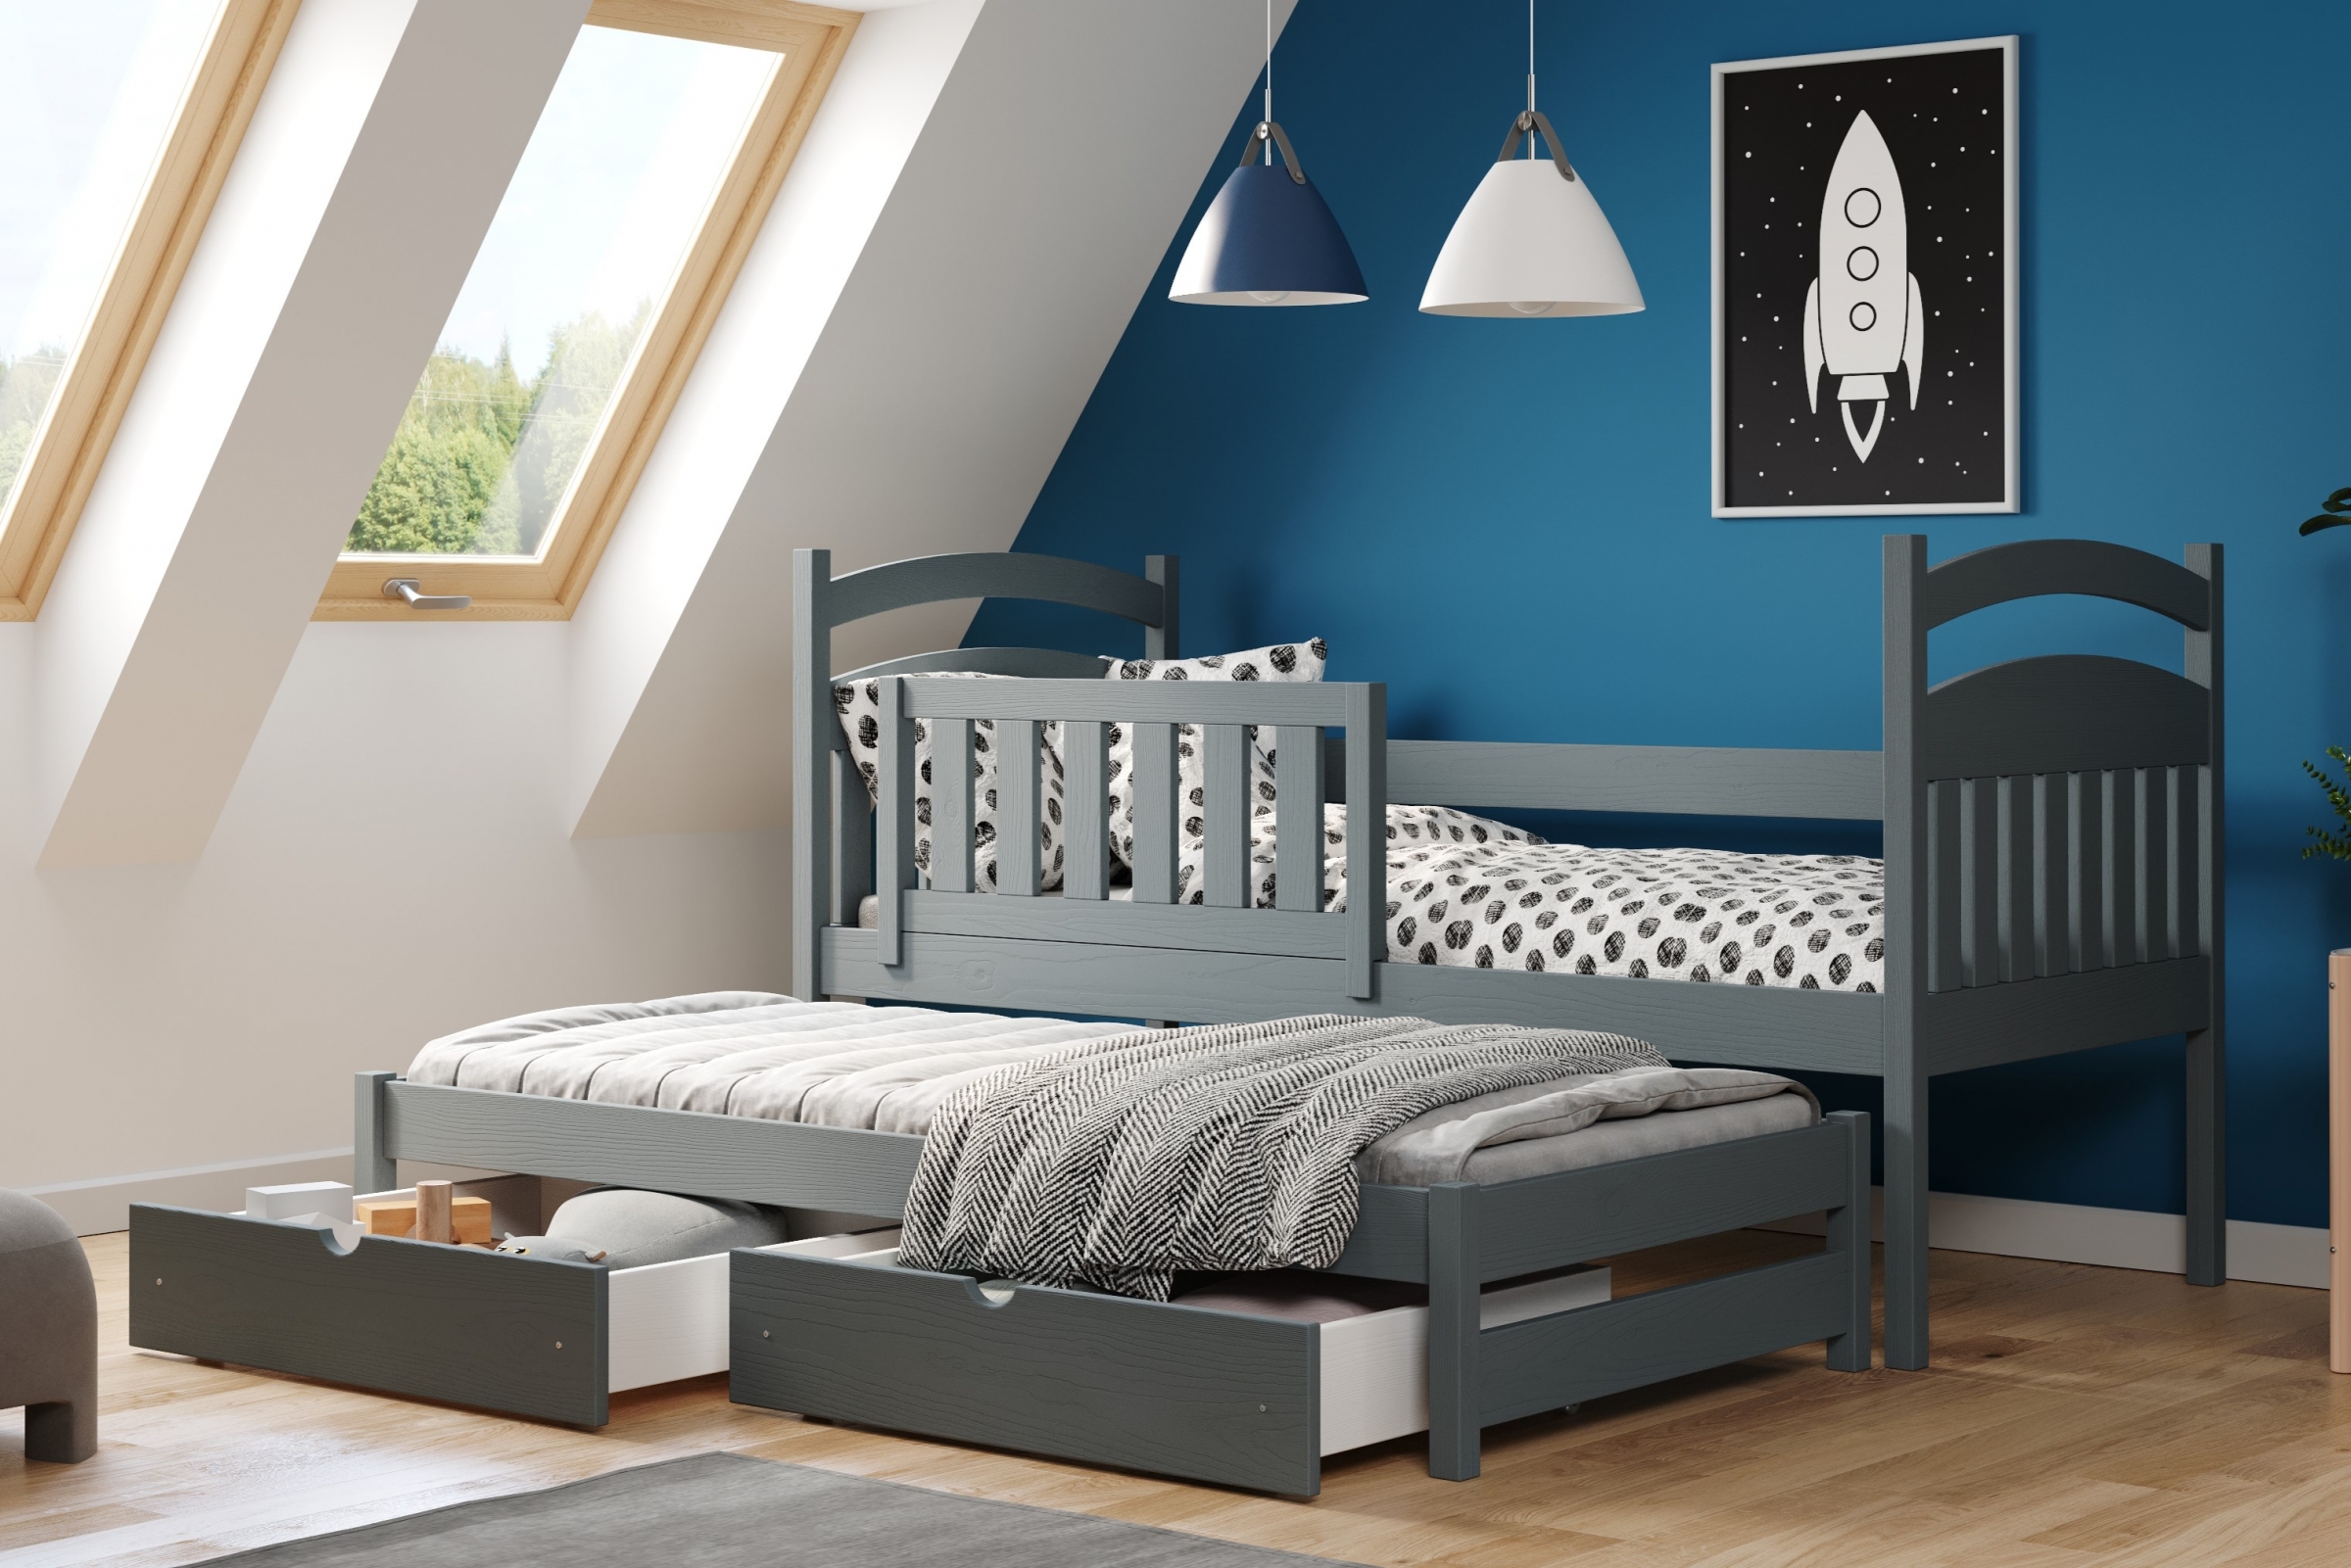 postel dětské přízemní výsuvná Amely - Barva grafit, rozměr 80x160 postel dzieciece přízemní výsuvná Amely - Barva grafit - aranzacja